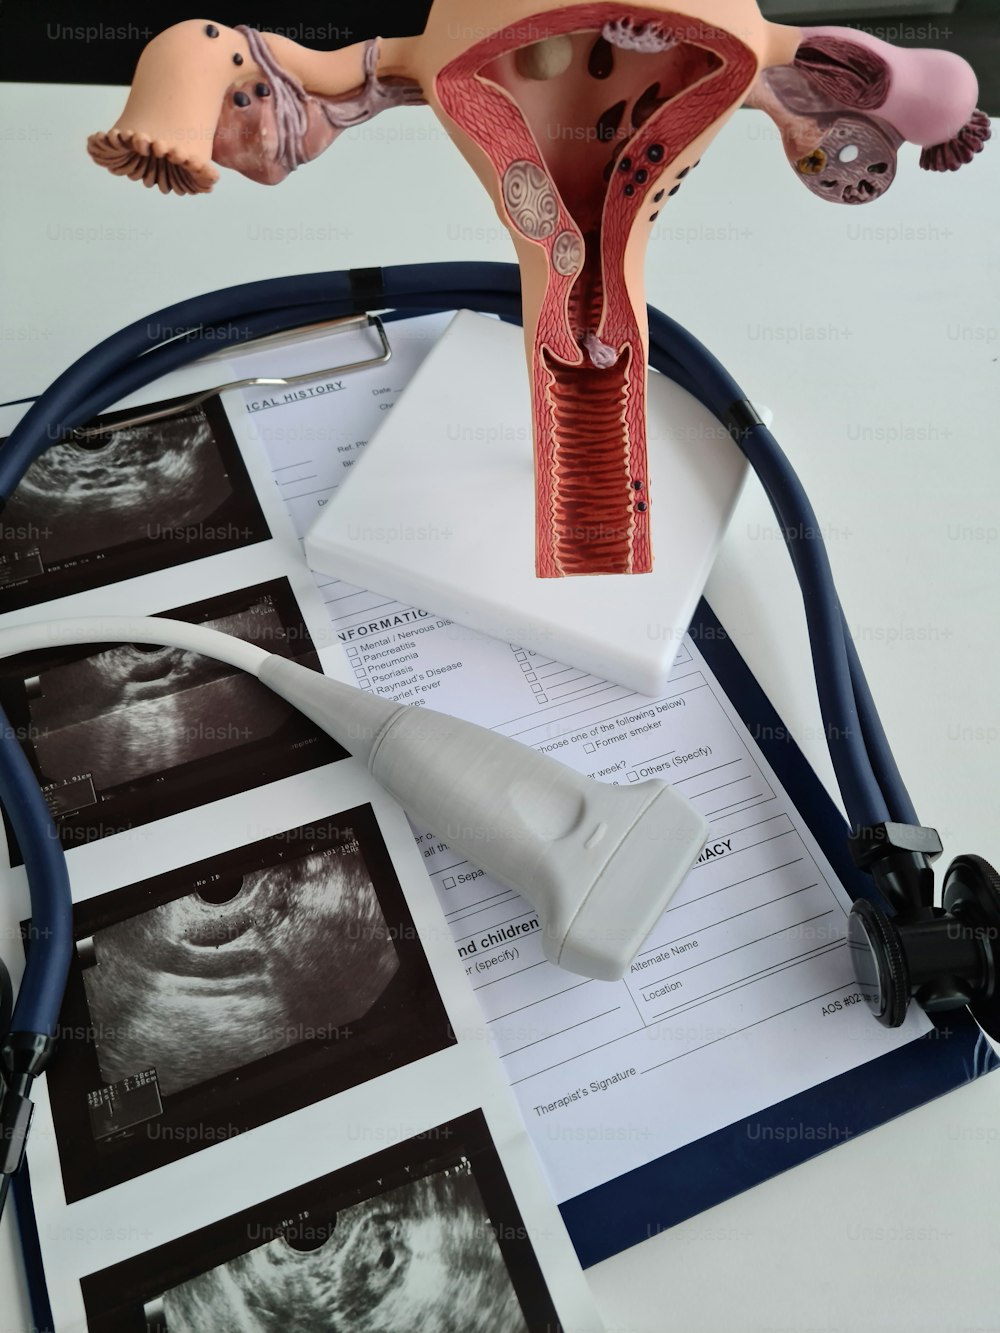 Ultraschall der Gebärmutter und Erkrankungen des weiblichen Fortpflanzungssystems. Gynäkologische Erkrankungen der Frau und medizinisches Diagnostikkonzept